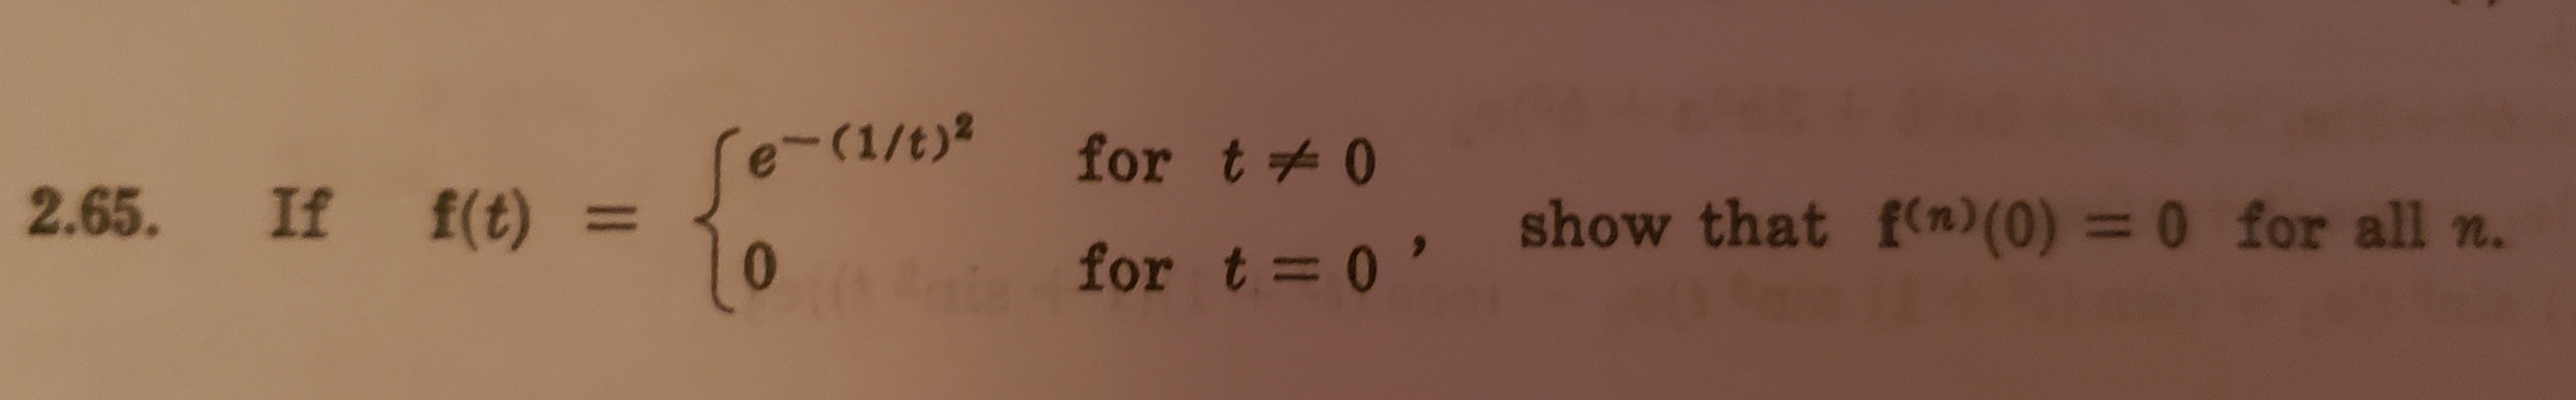 -(1/t)2
for t0
2.65. If f(t) =
show that f(n) (0) = 0 for all n
for t= 0'
